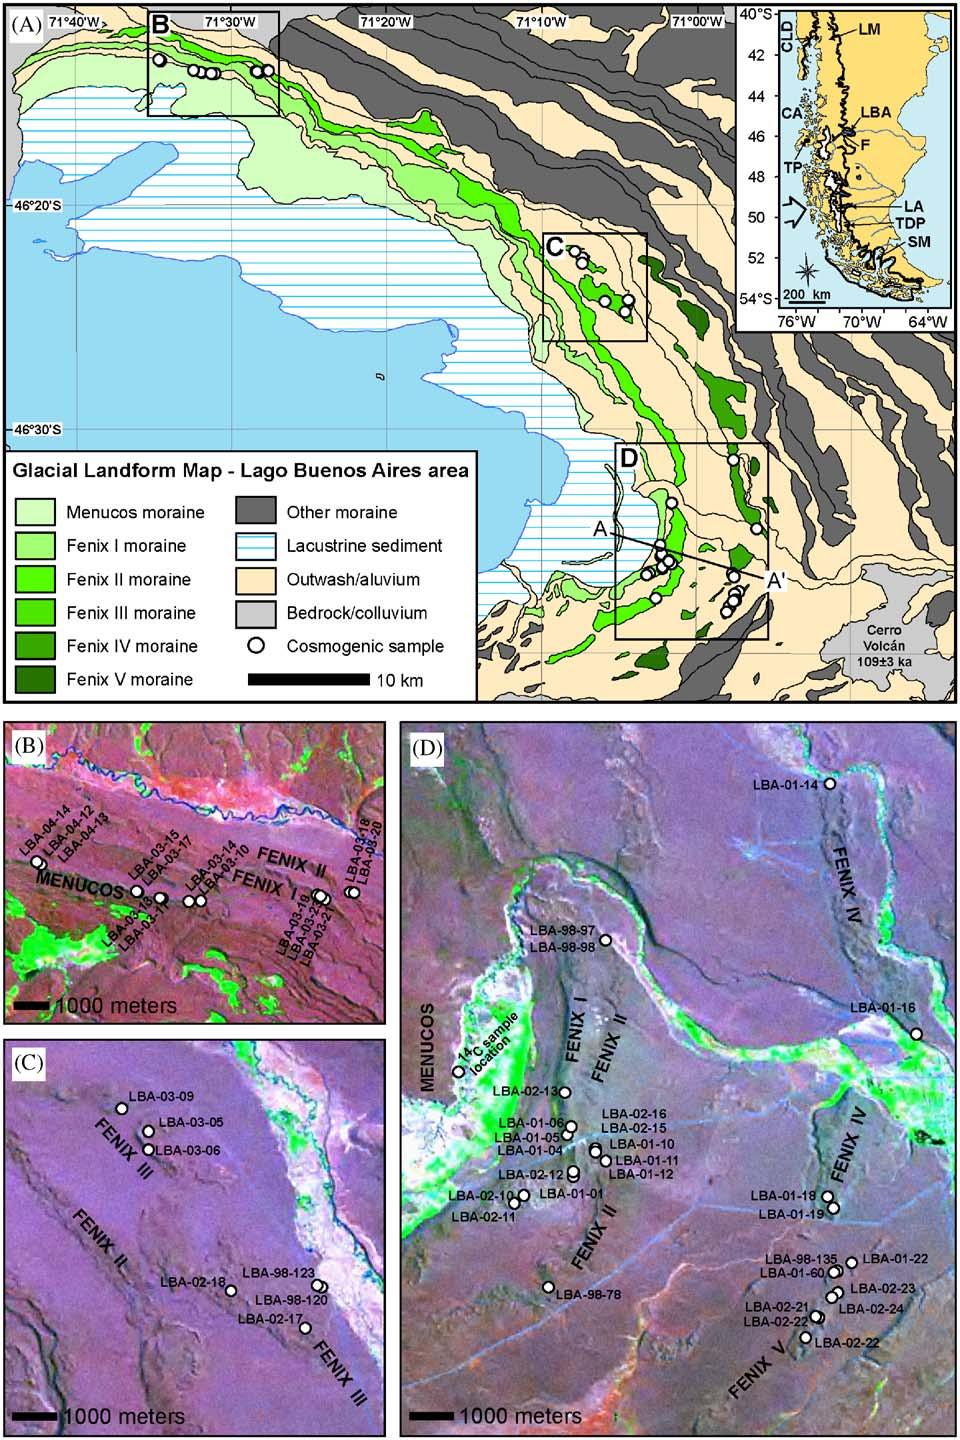 QUAGEO : D.C. Douglass et al. / Quaternary Geochronology ] (]]]]) ]]] ]]] 2 2 2 Fig.. (A) Glacial landform map of Lago Buenos Aires region, Argentina.